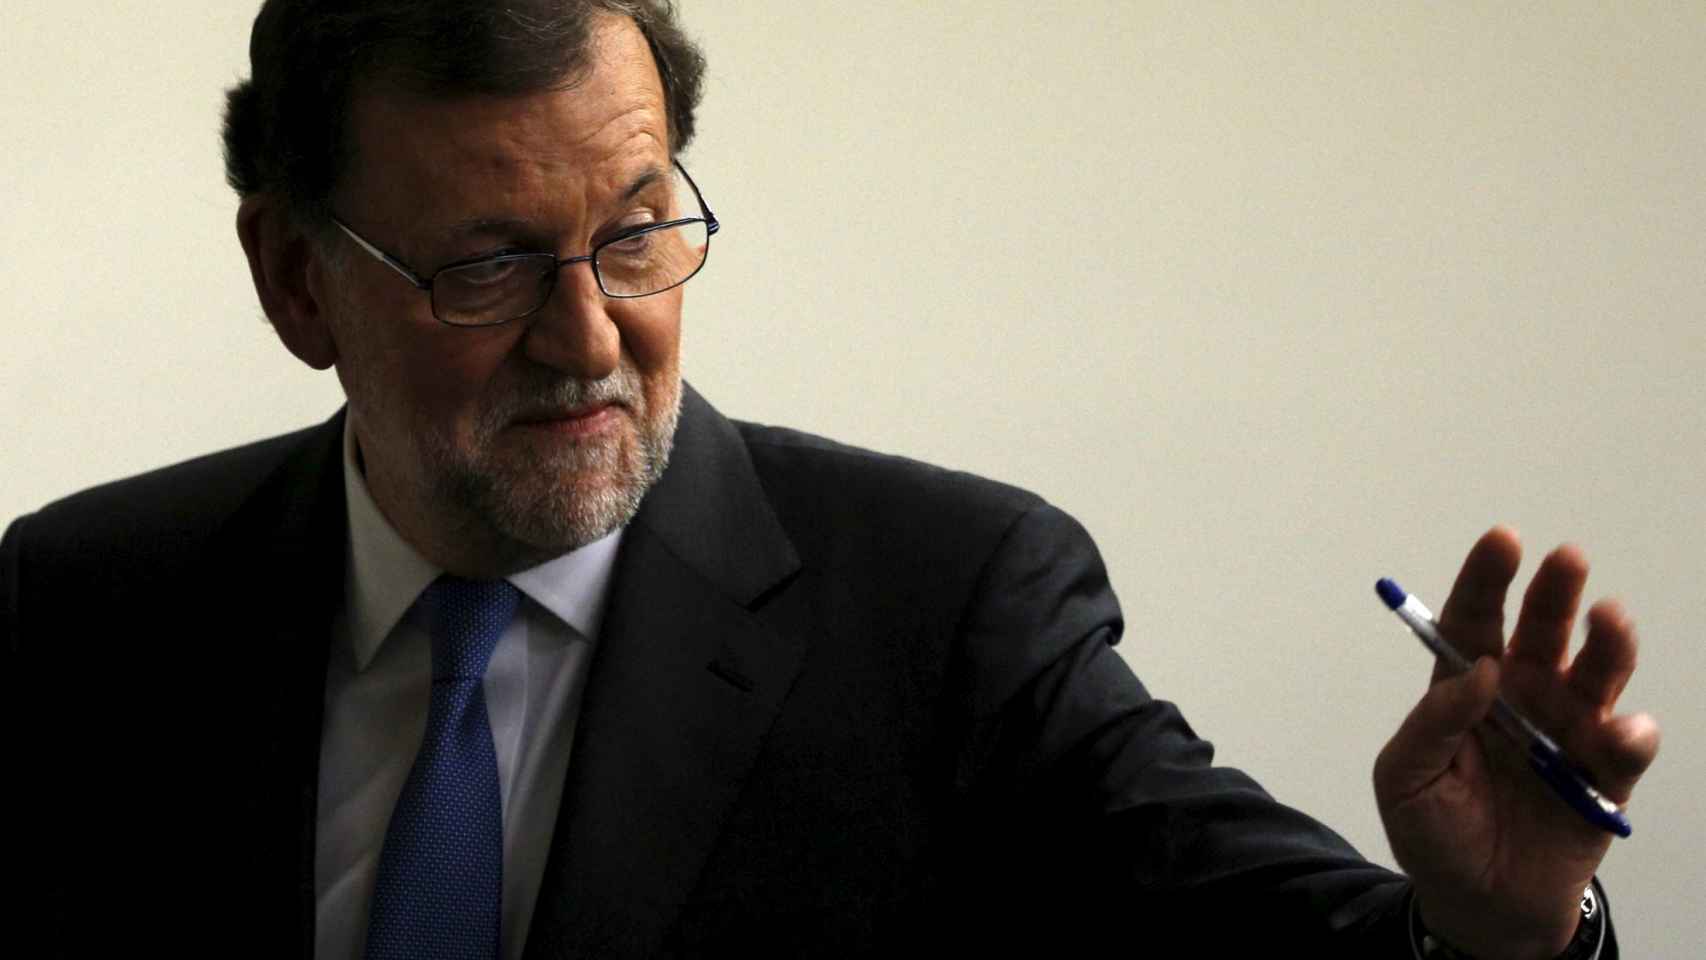 Mariano Rajoy, presidente del Gobierno en funciones.